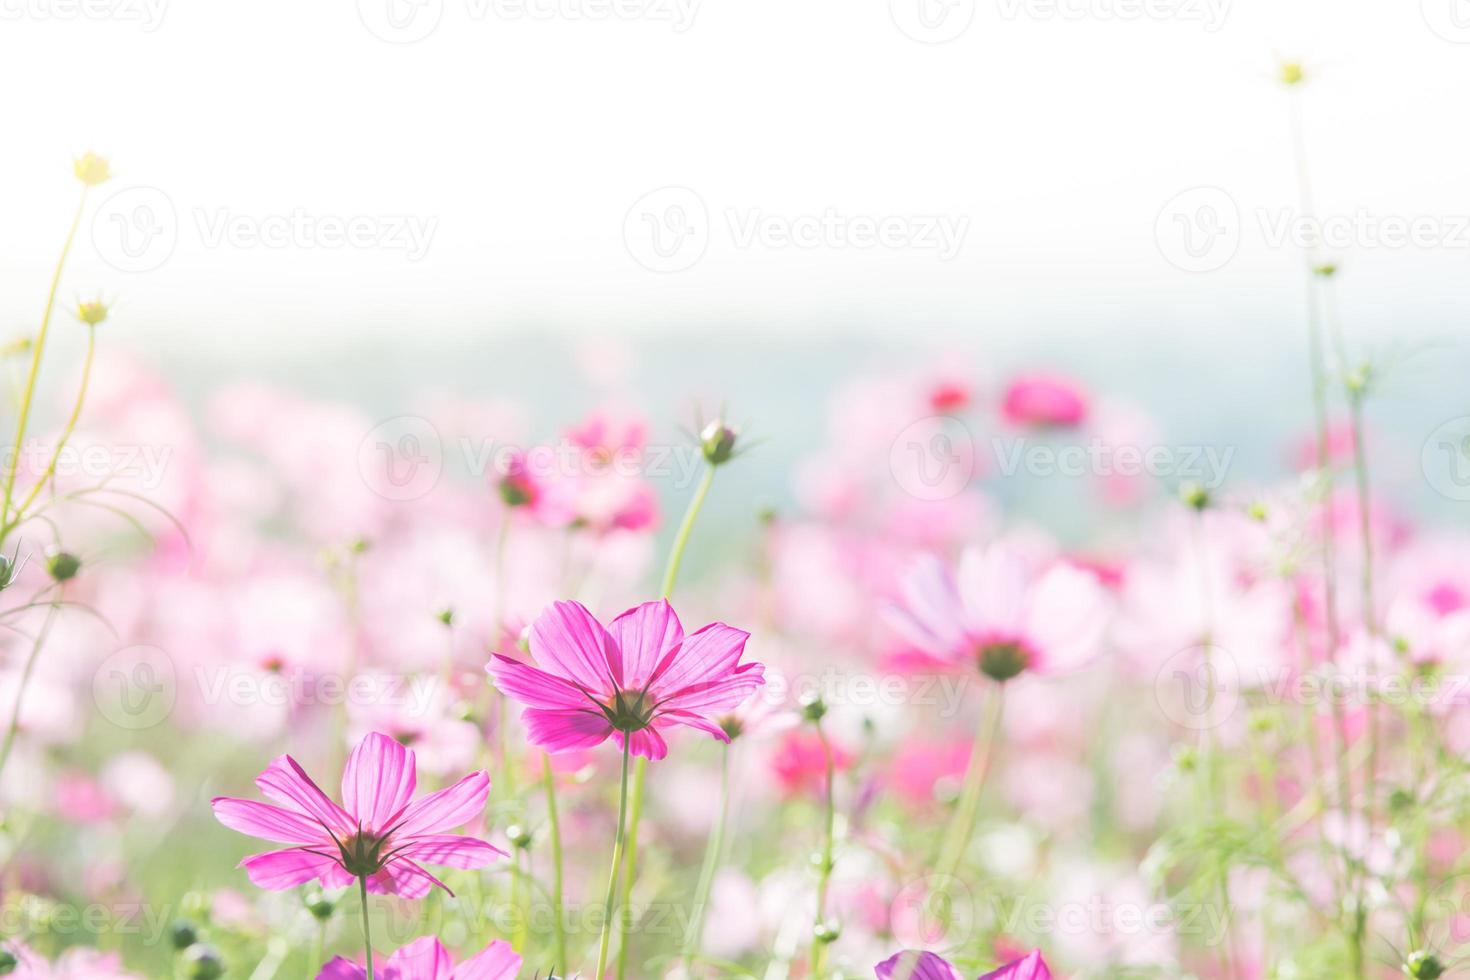 foco suave e seletivo do cosmos, flor embaçada para fundo, plantas coloridas foto